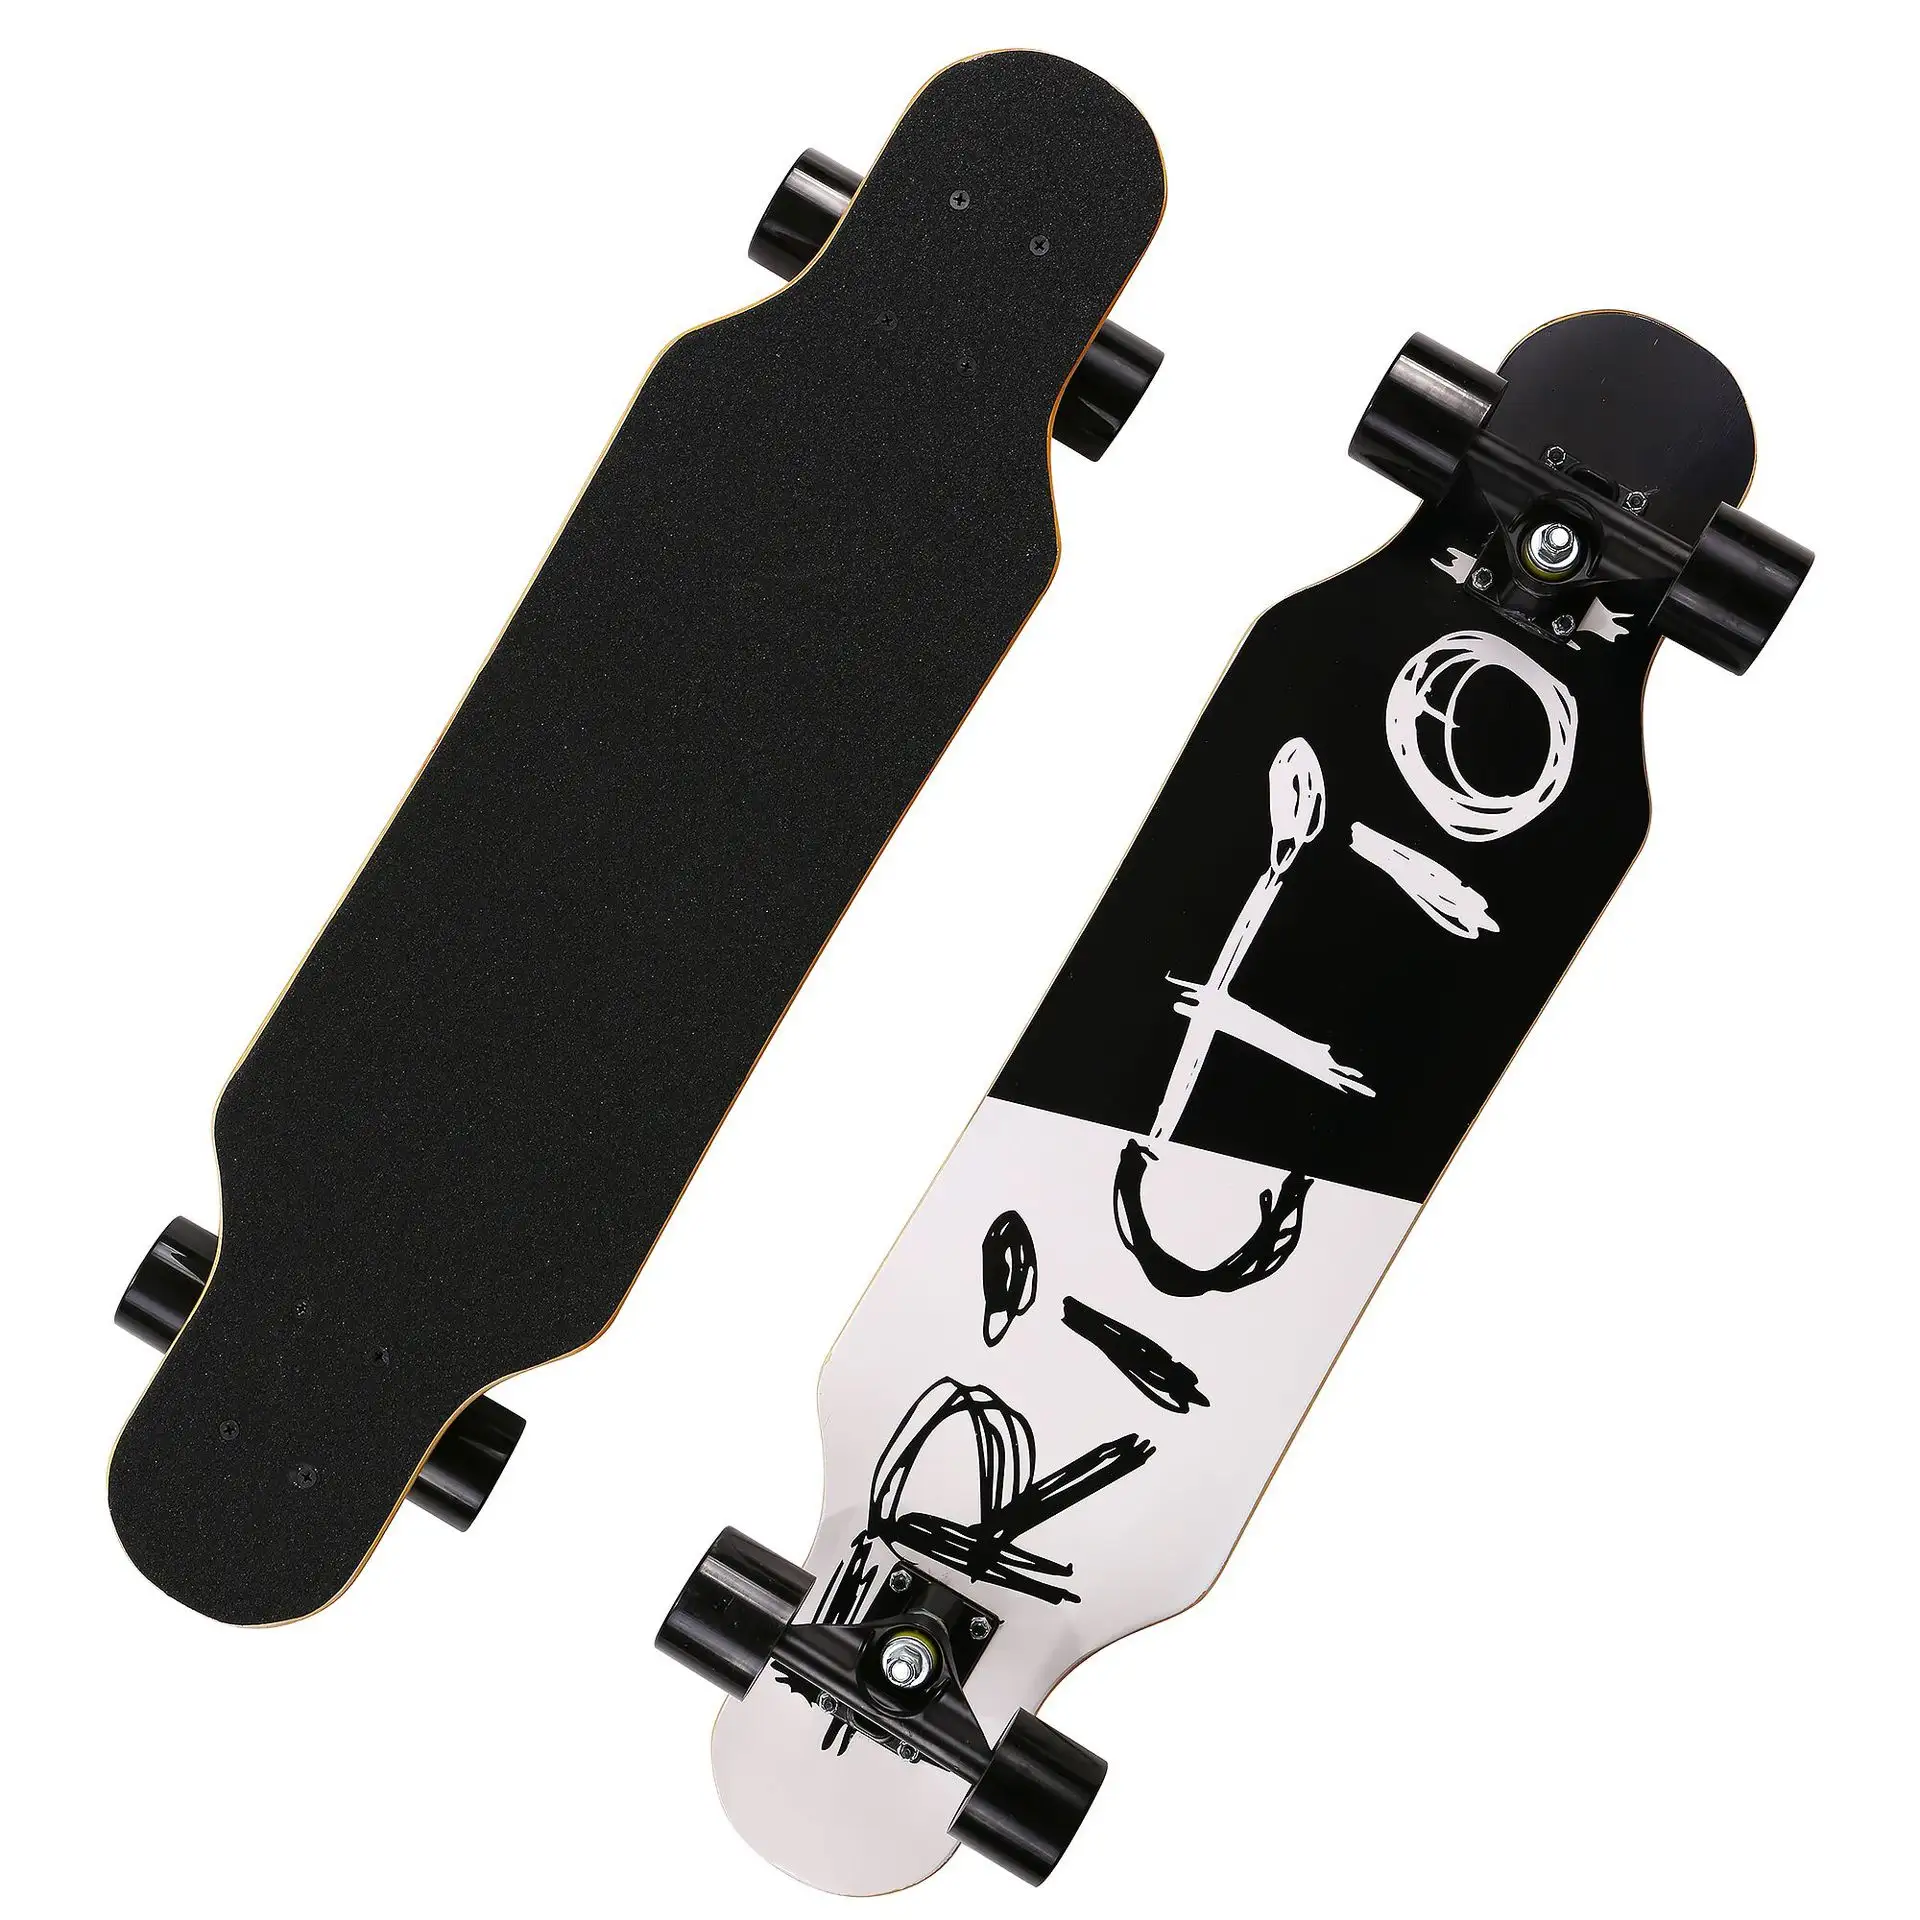 Wholesale Customized Outdoor Sports 4 Wheels Complete Long Board Skate Board Longboard Skateboard for Beginner